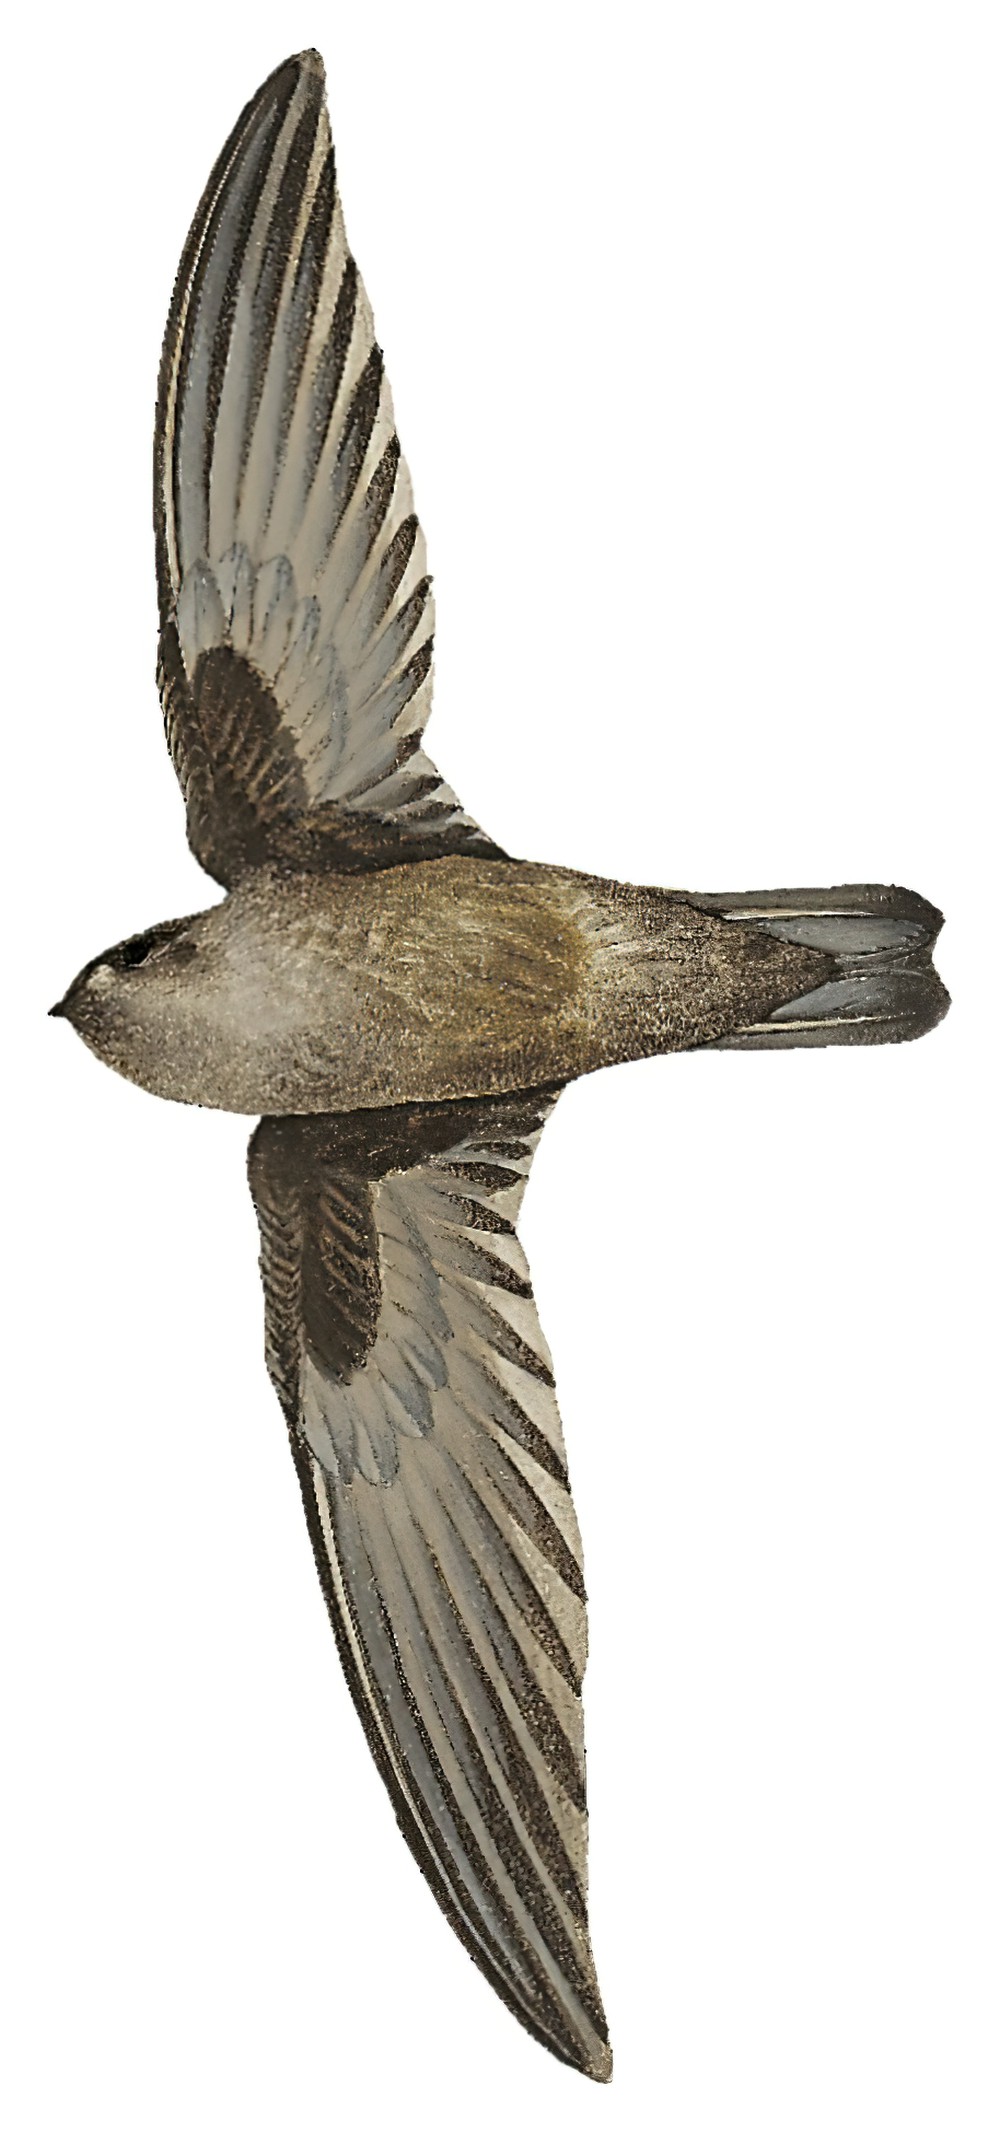 菲律宾金丝燕 / Philippine Swiftlet / Aerodramus mearnsi